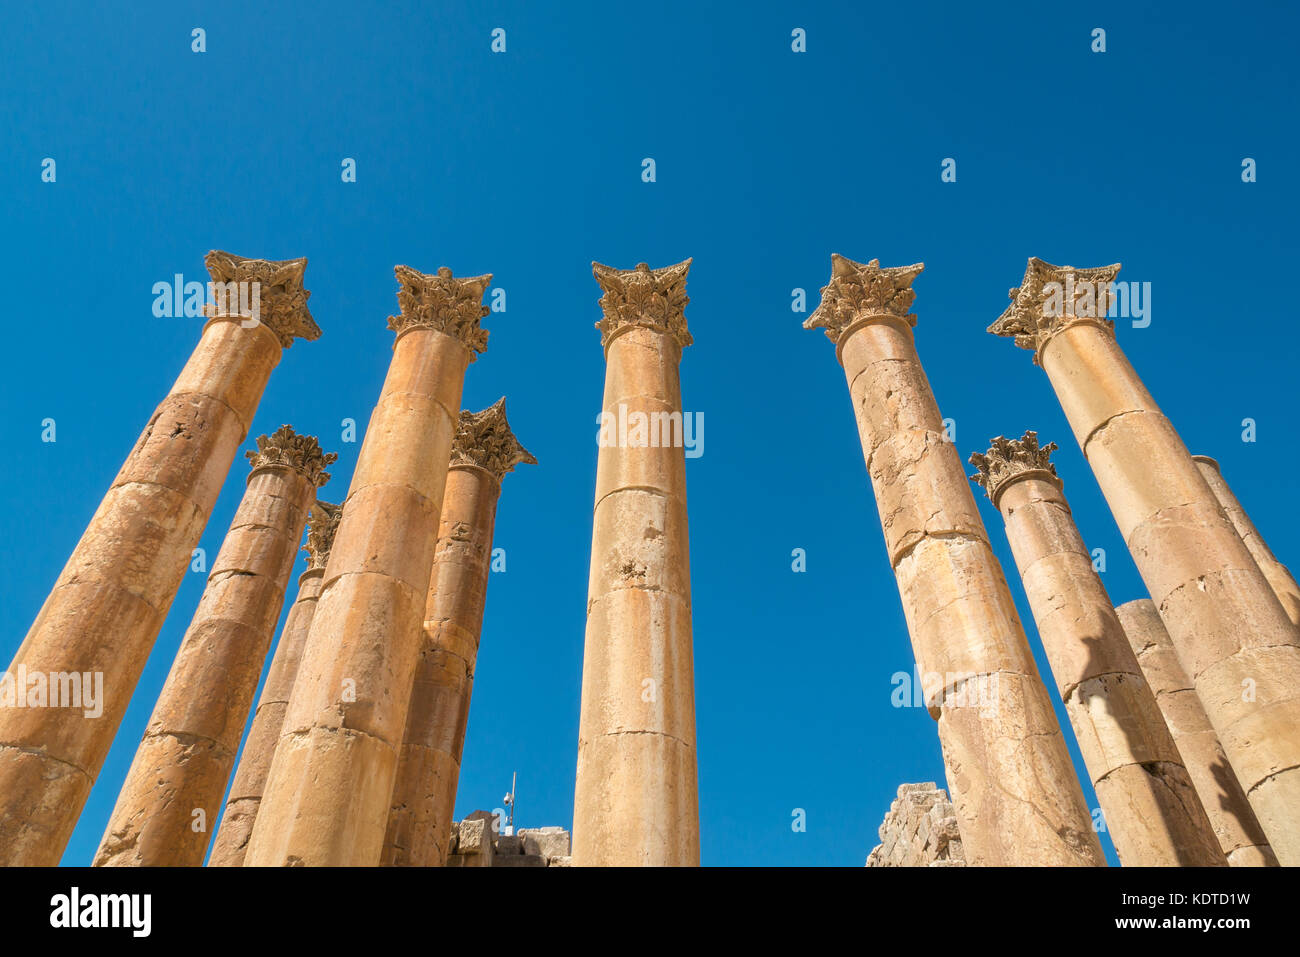 Il Tempio di Artemide, cercando fino ad alte colonne corinzie con foglie di acanto decorazioni scolpite, città romana Jerash sito archeologico, Giordania, Medio Oriente Foto Stock